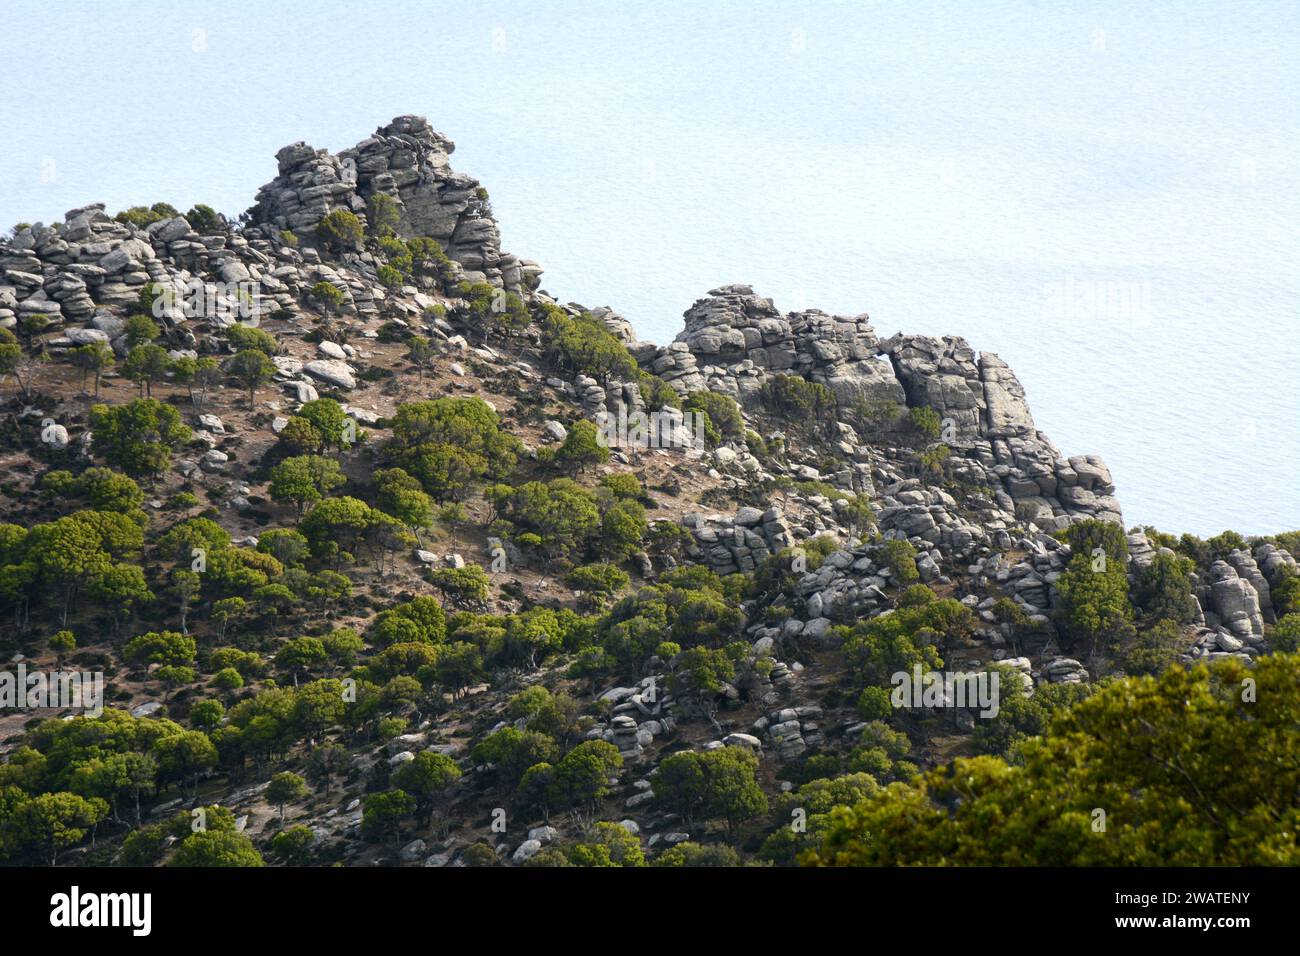 Ein steiler, felsiger Berg und Klippen, die über der Ägäis thronen, an der Südküste der griechischen Insel Ikaria, in der Nähe von Karkinagri, Griechenland. Stockfoto